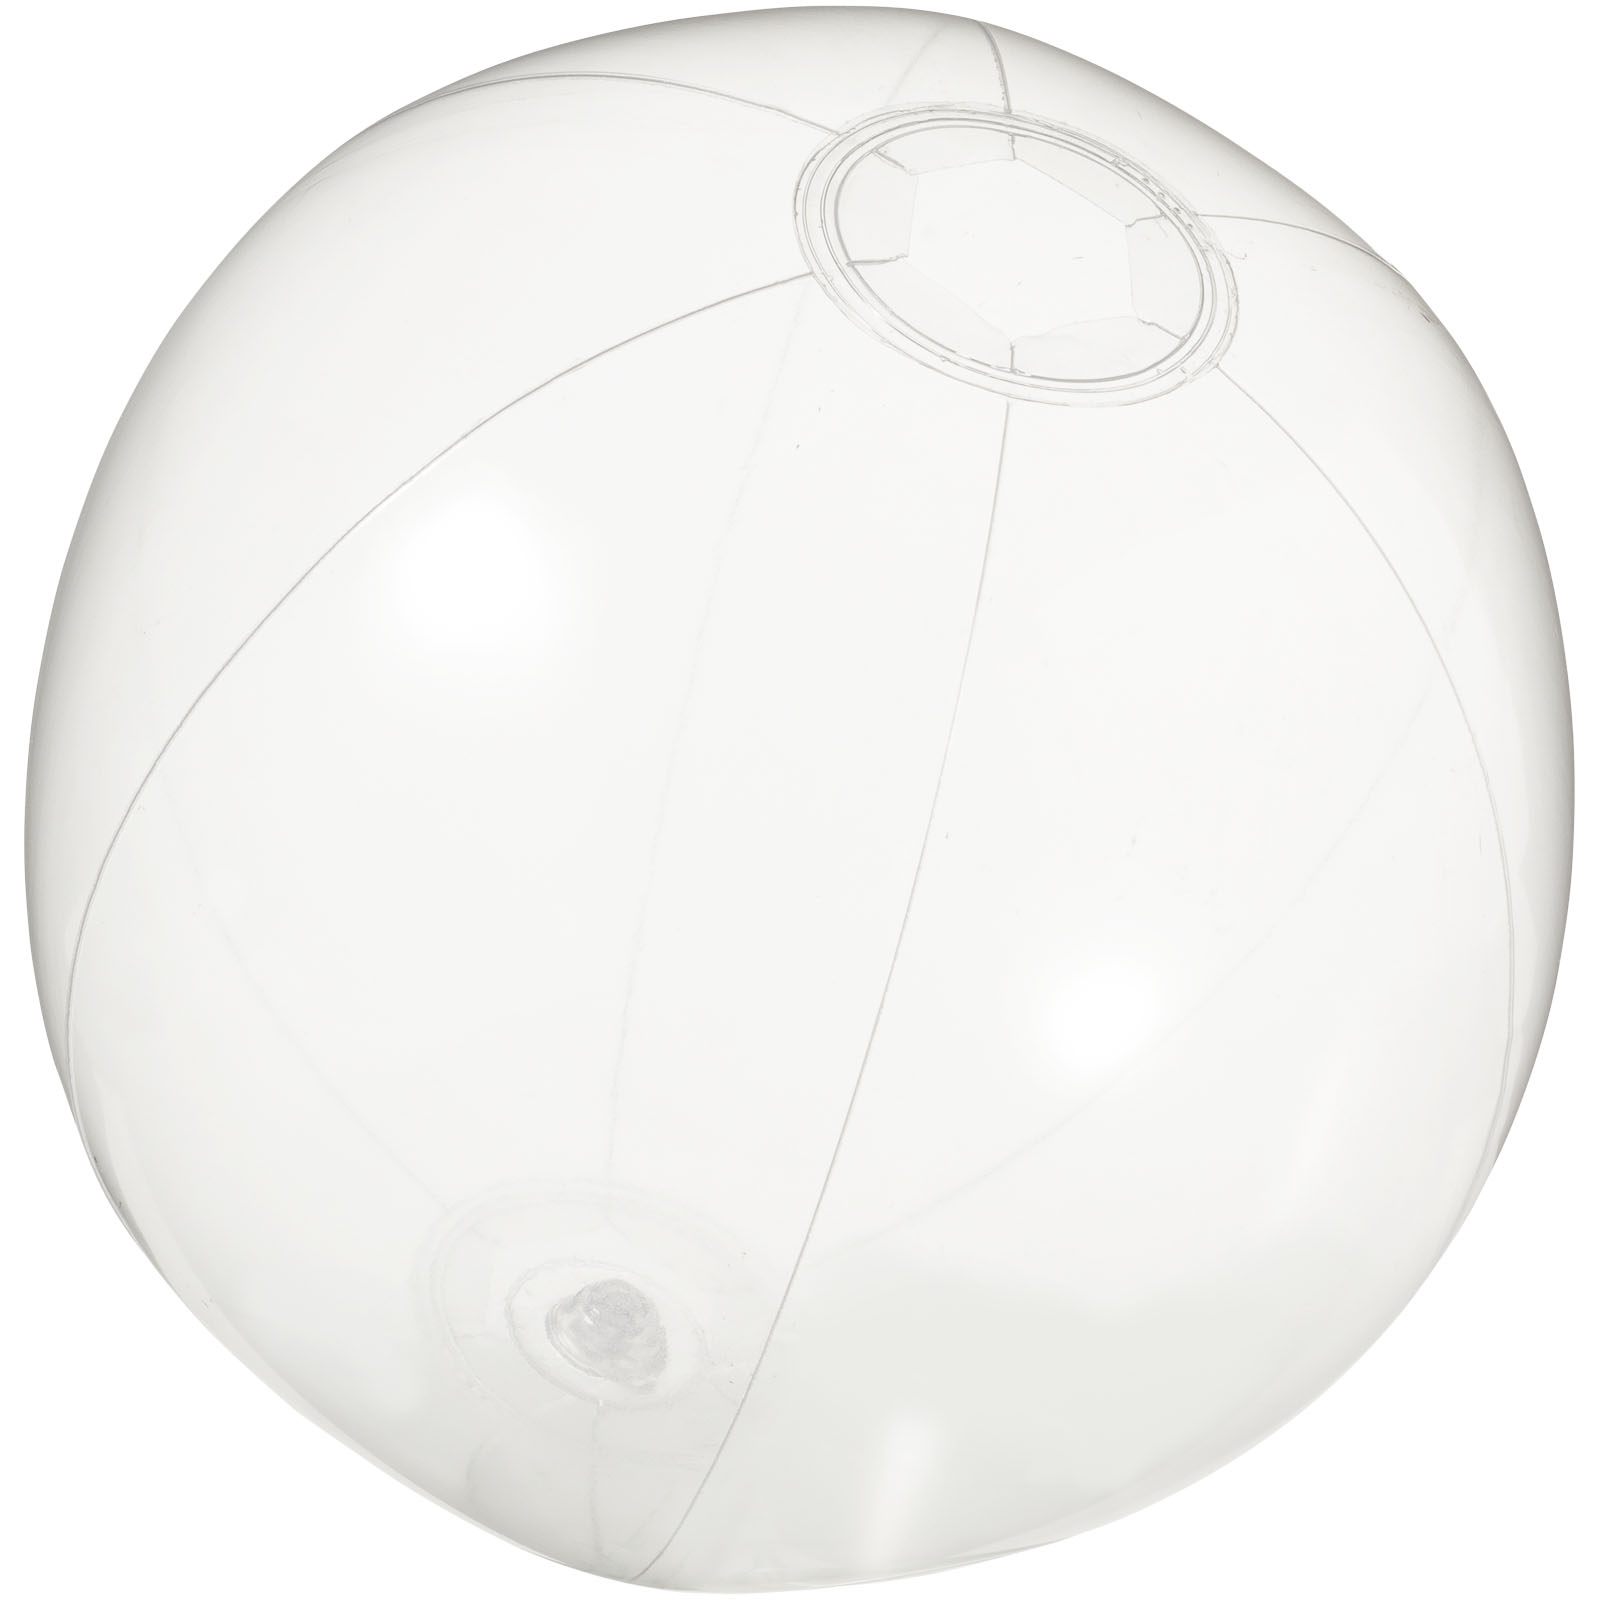 Ballon de plage gonflable transparent - Sainte-Eulalie-d'Olt - Zaprinta France